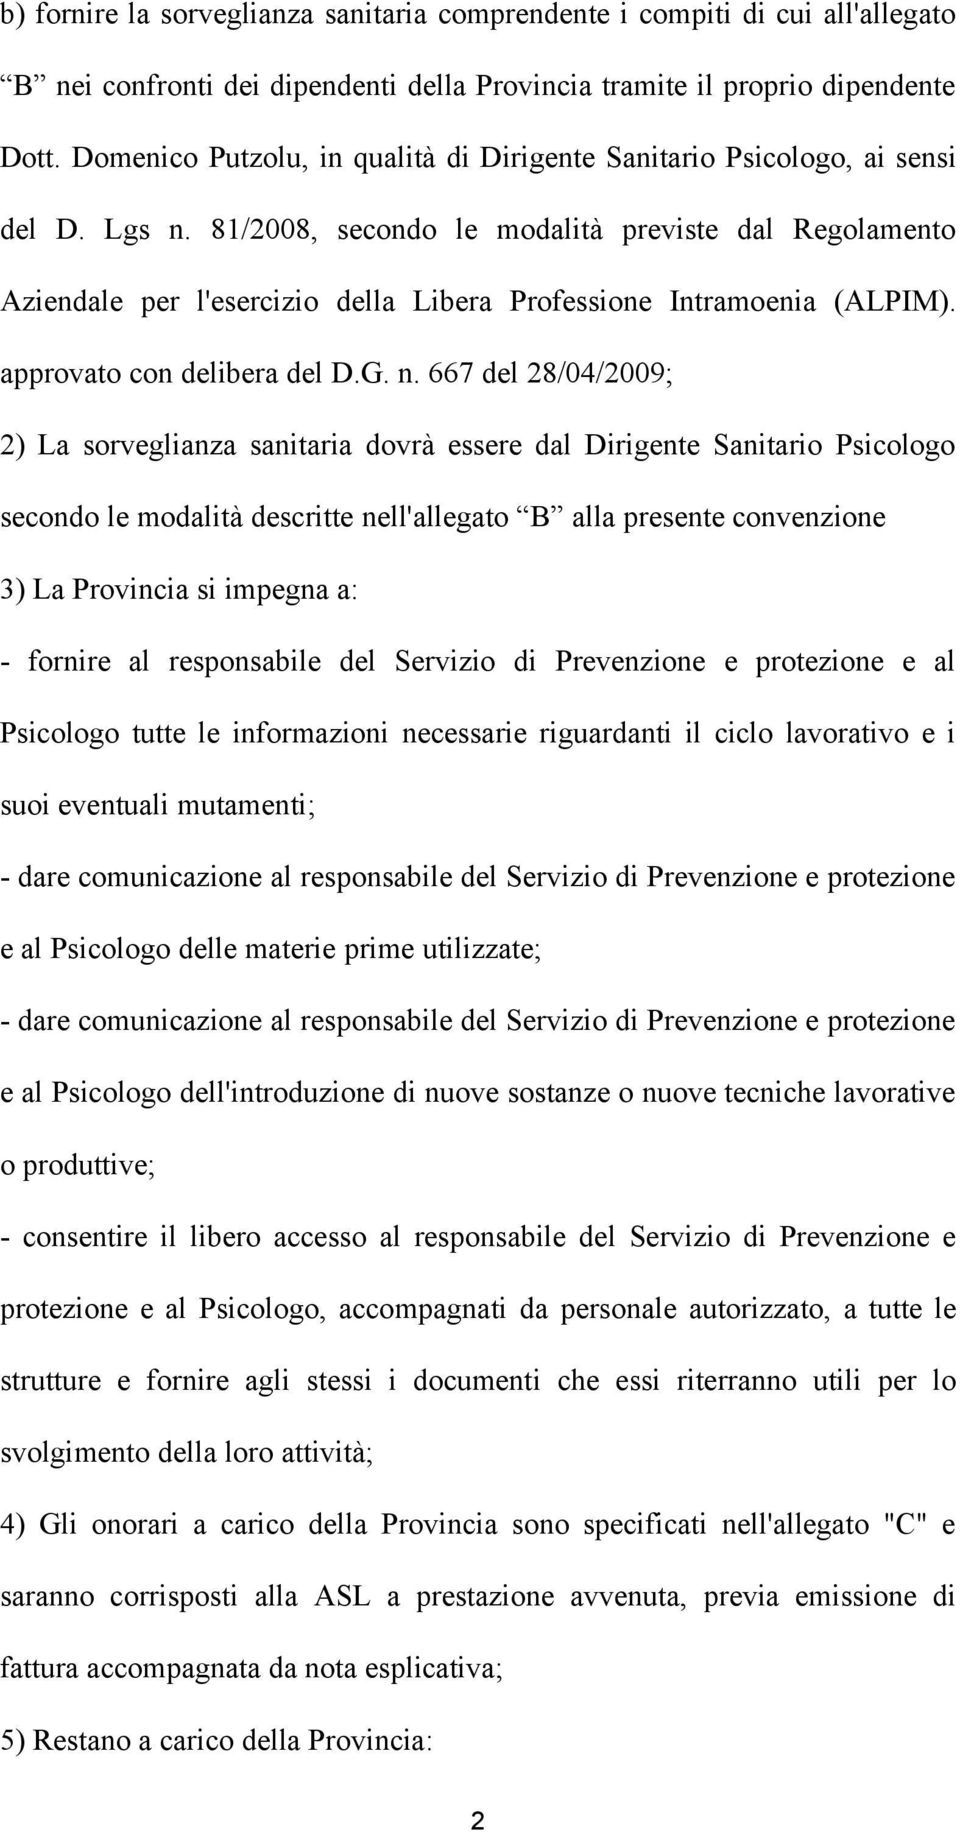 81/2008, secondo le modalità previste dal Regolamento Aziendale per l'esercizio della Libera Professione Intramoenia (ALPIM). approvato con delibera del D.G. n.